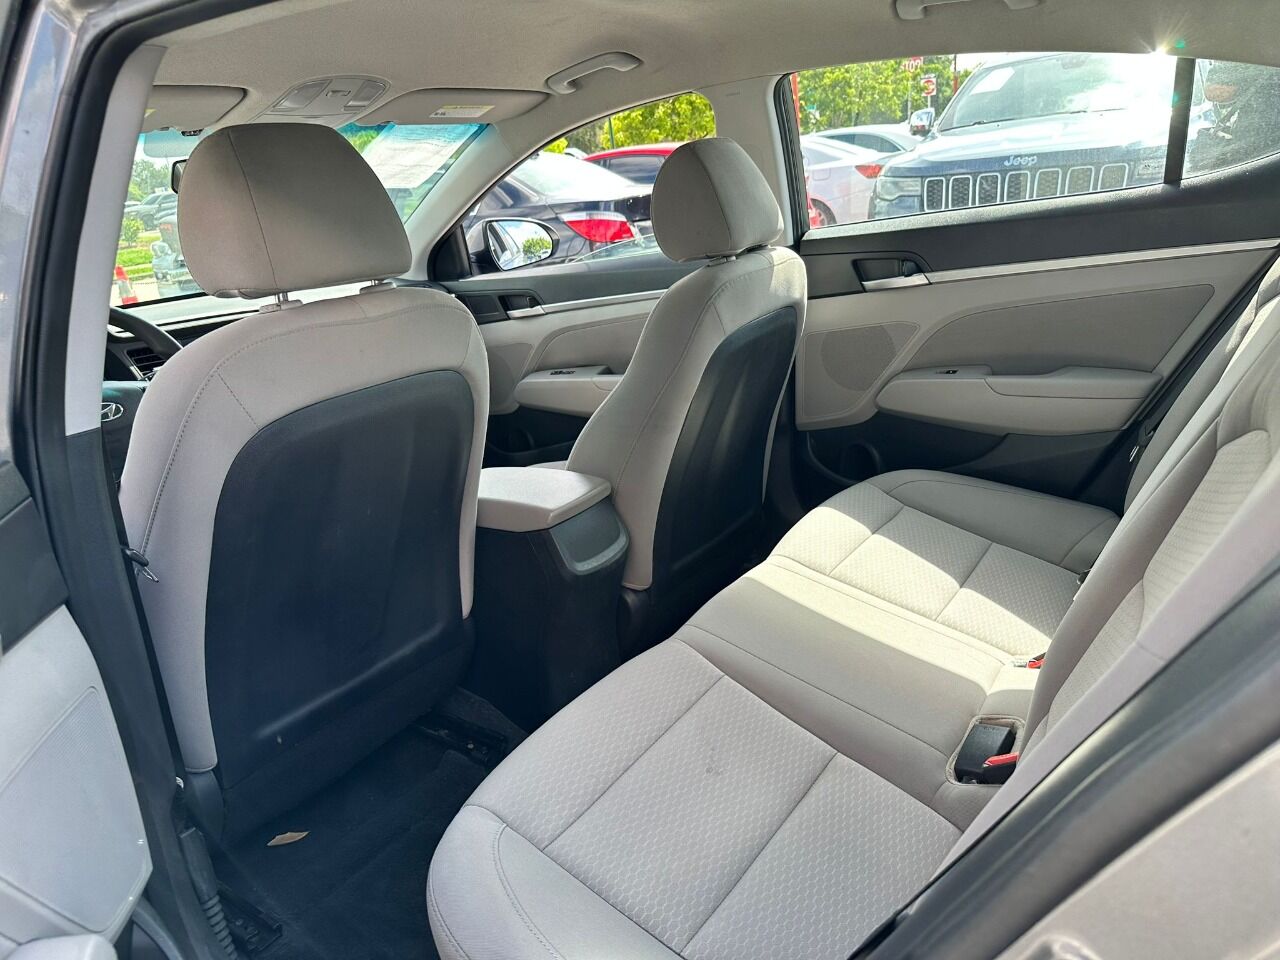 2019 HYUNDAI Elantra Sedan - $18,995